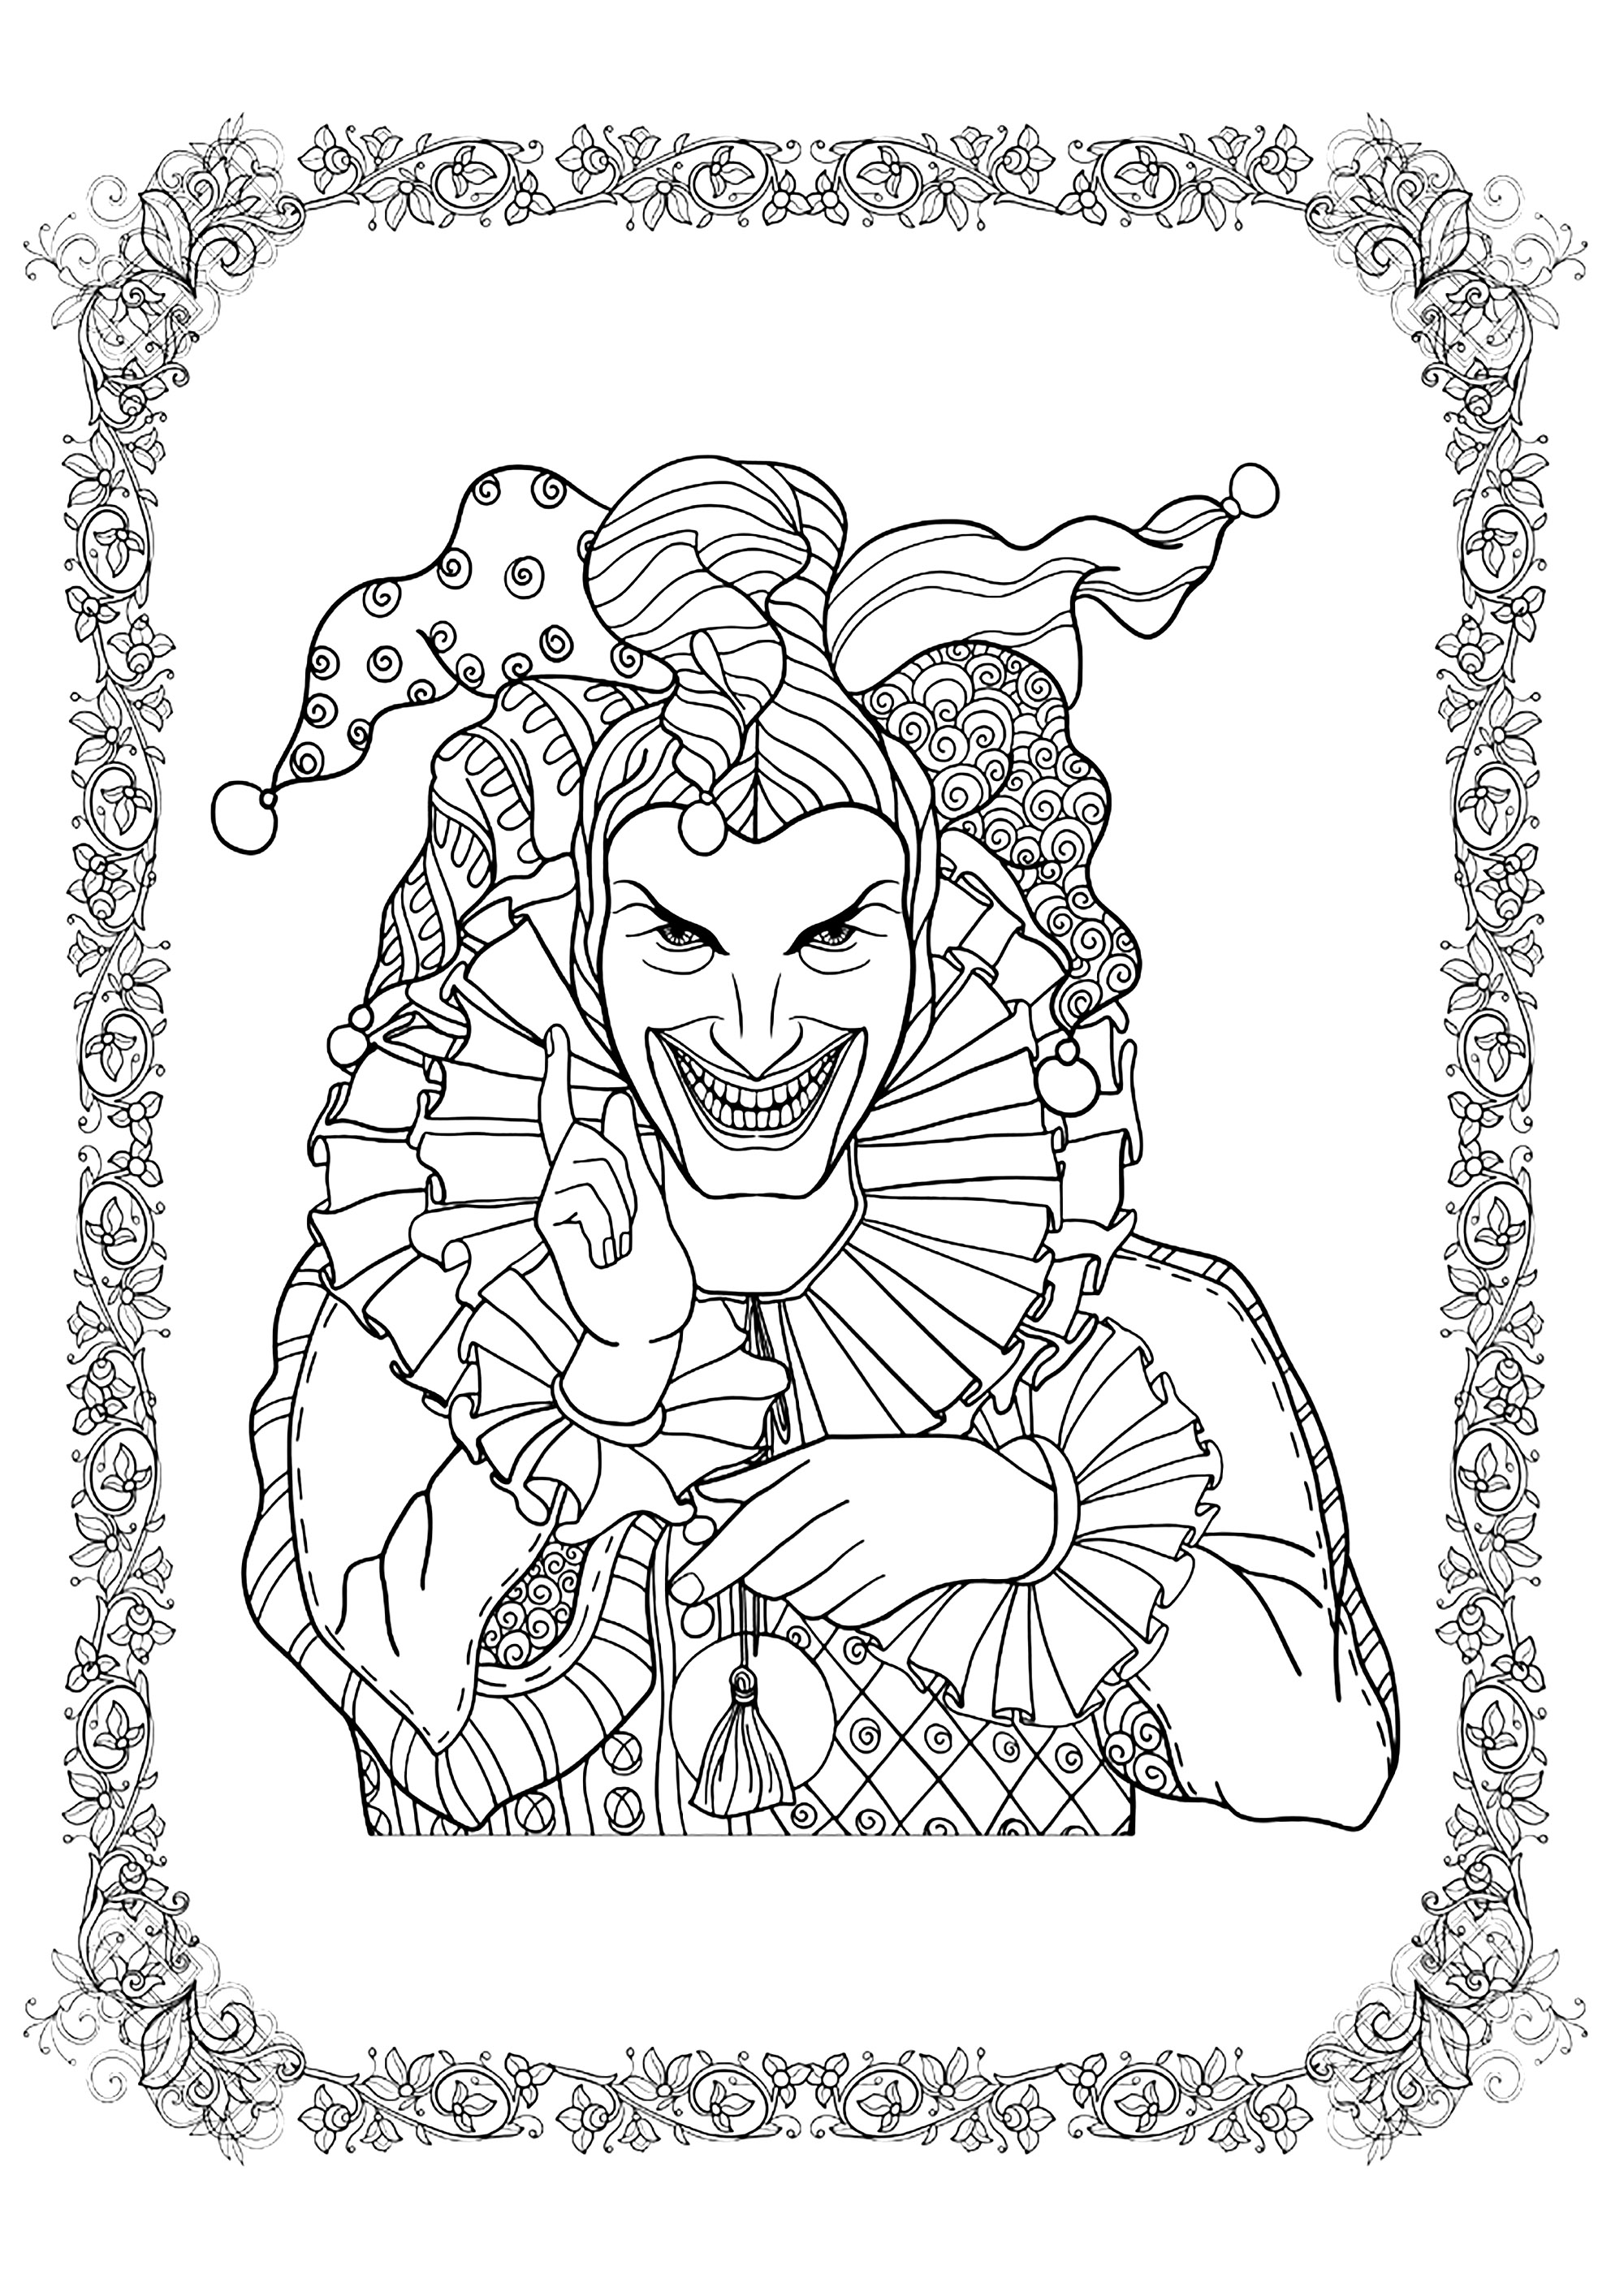 O Joker faz tudo para o Halloween. Pinte também a moldura com padrão intrincado, Fonte : 123rf   Artista : Helenlane